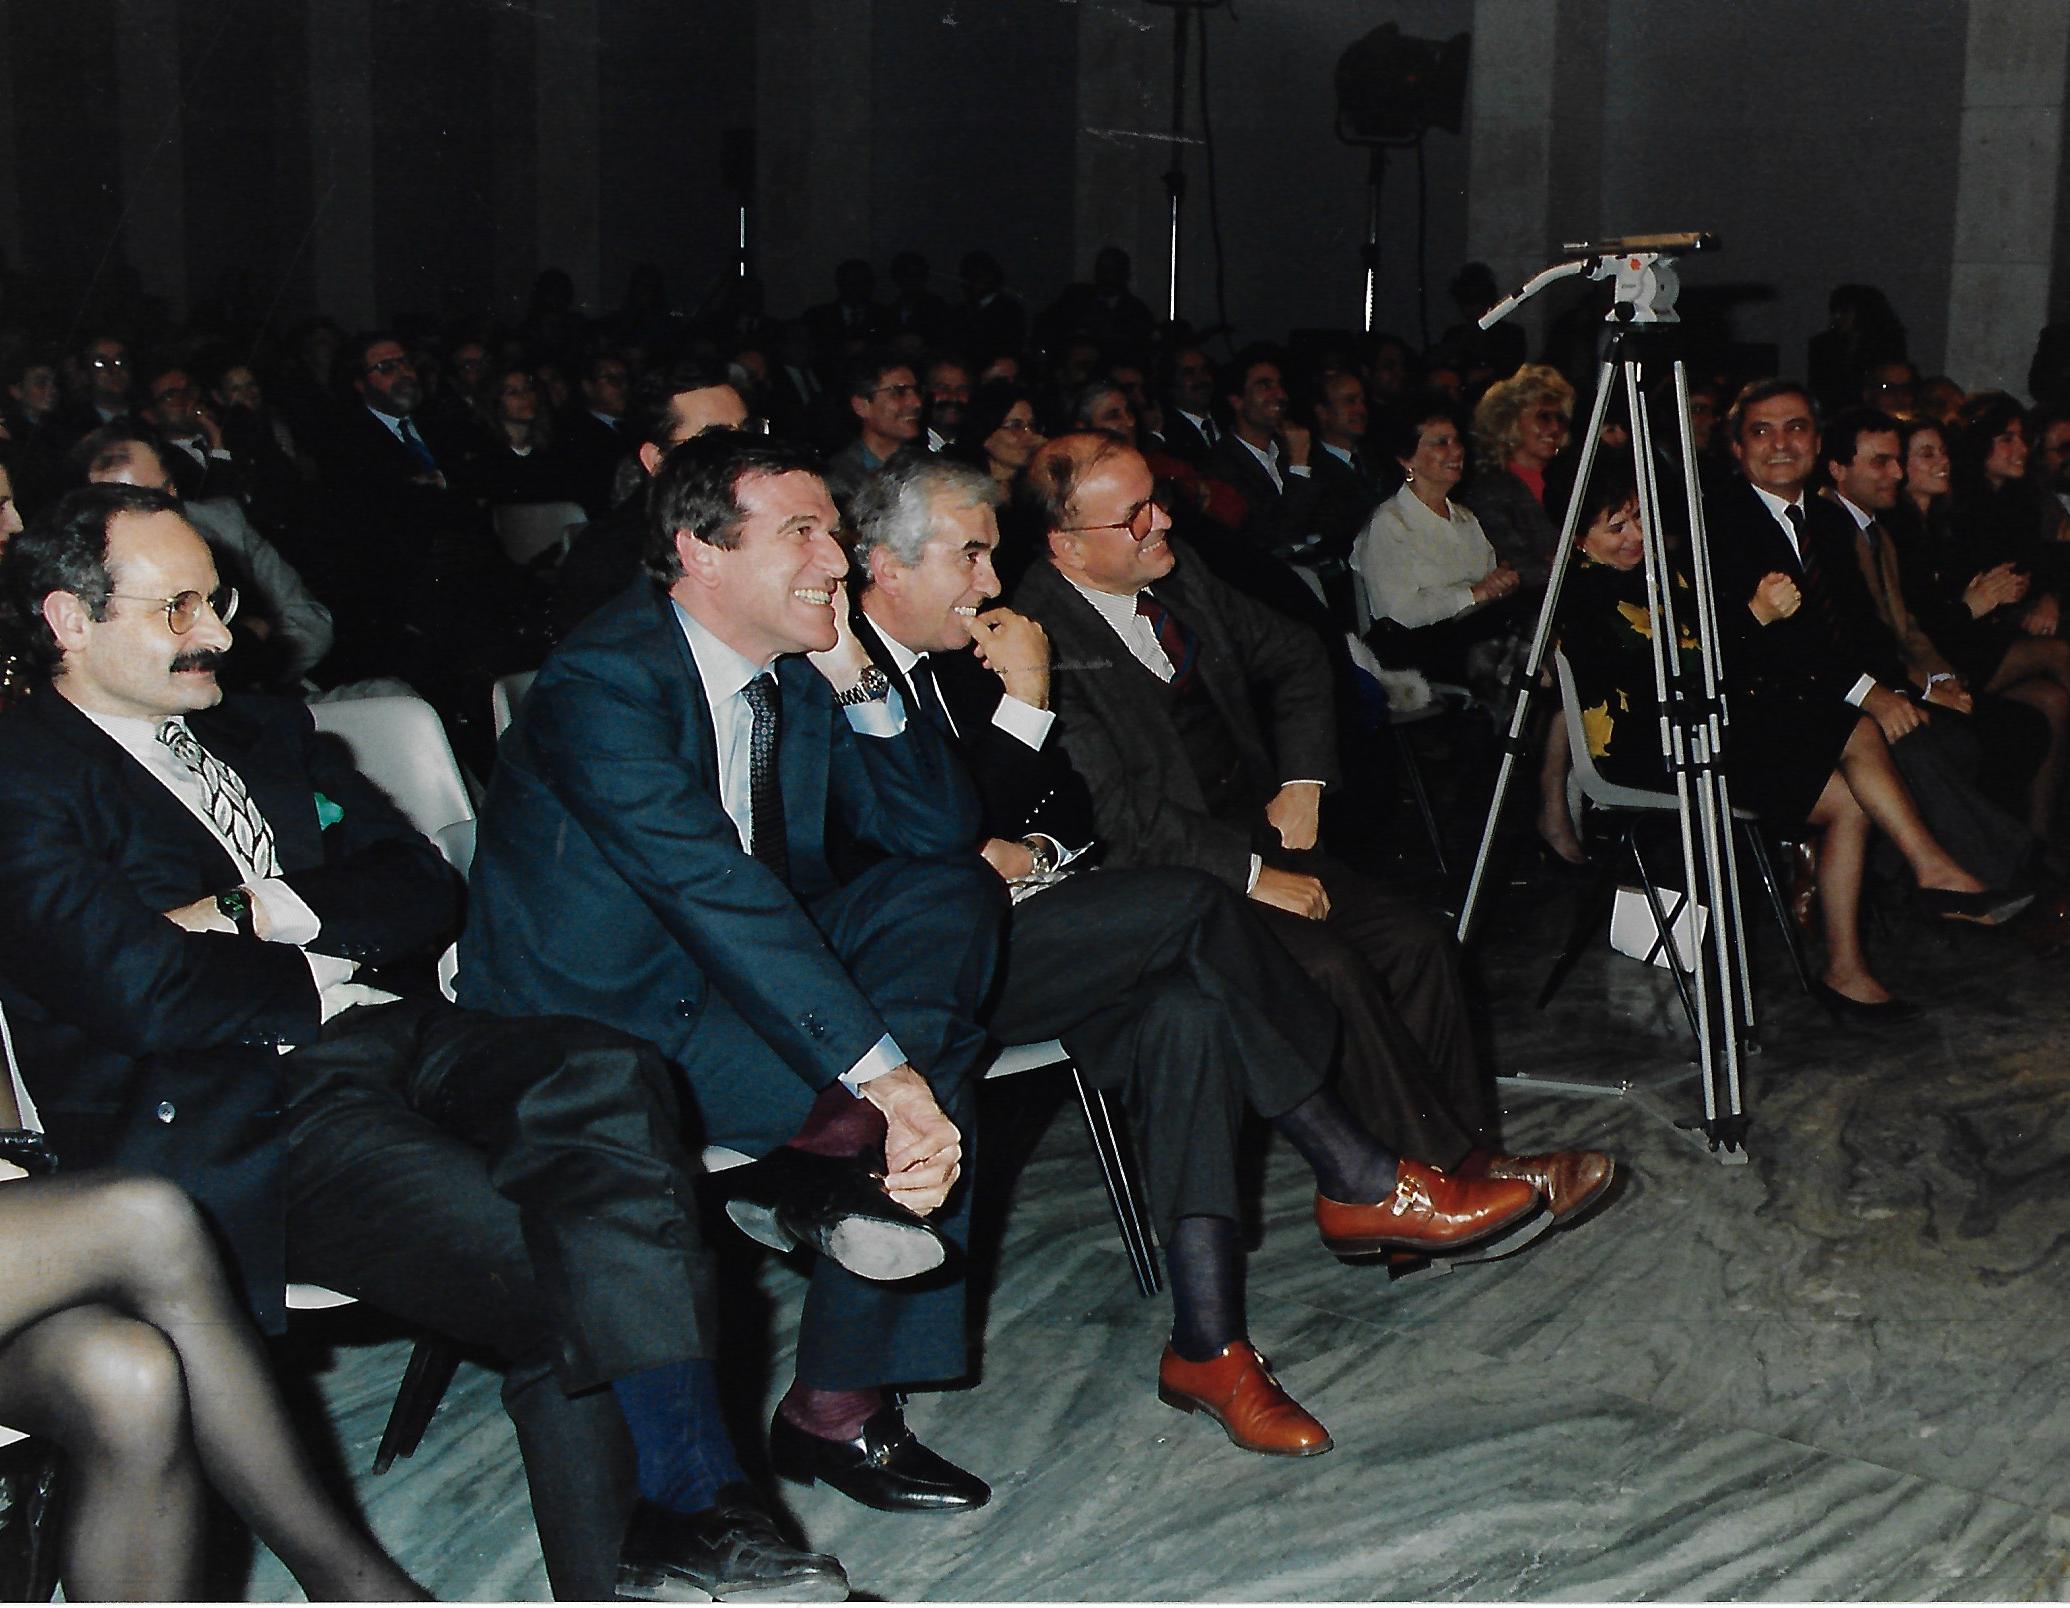 Novembre 1984: Un momento della serata di spettacolo in occasione dellAssemblea delle strutture UIL. In primo piano Benenuto, Larizza Pagani e Gerace